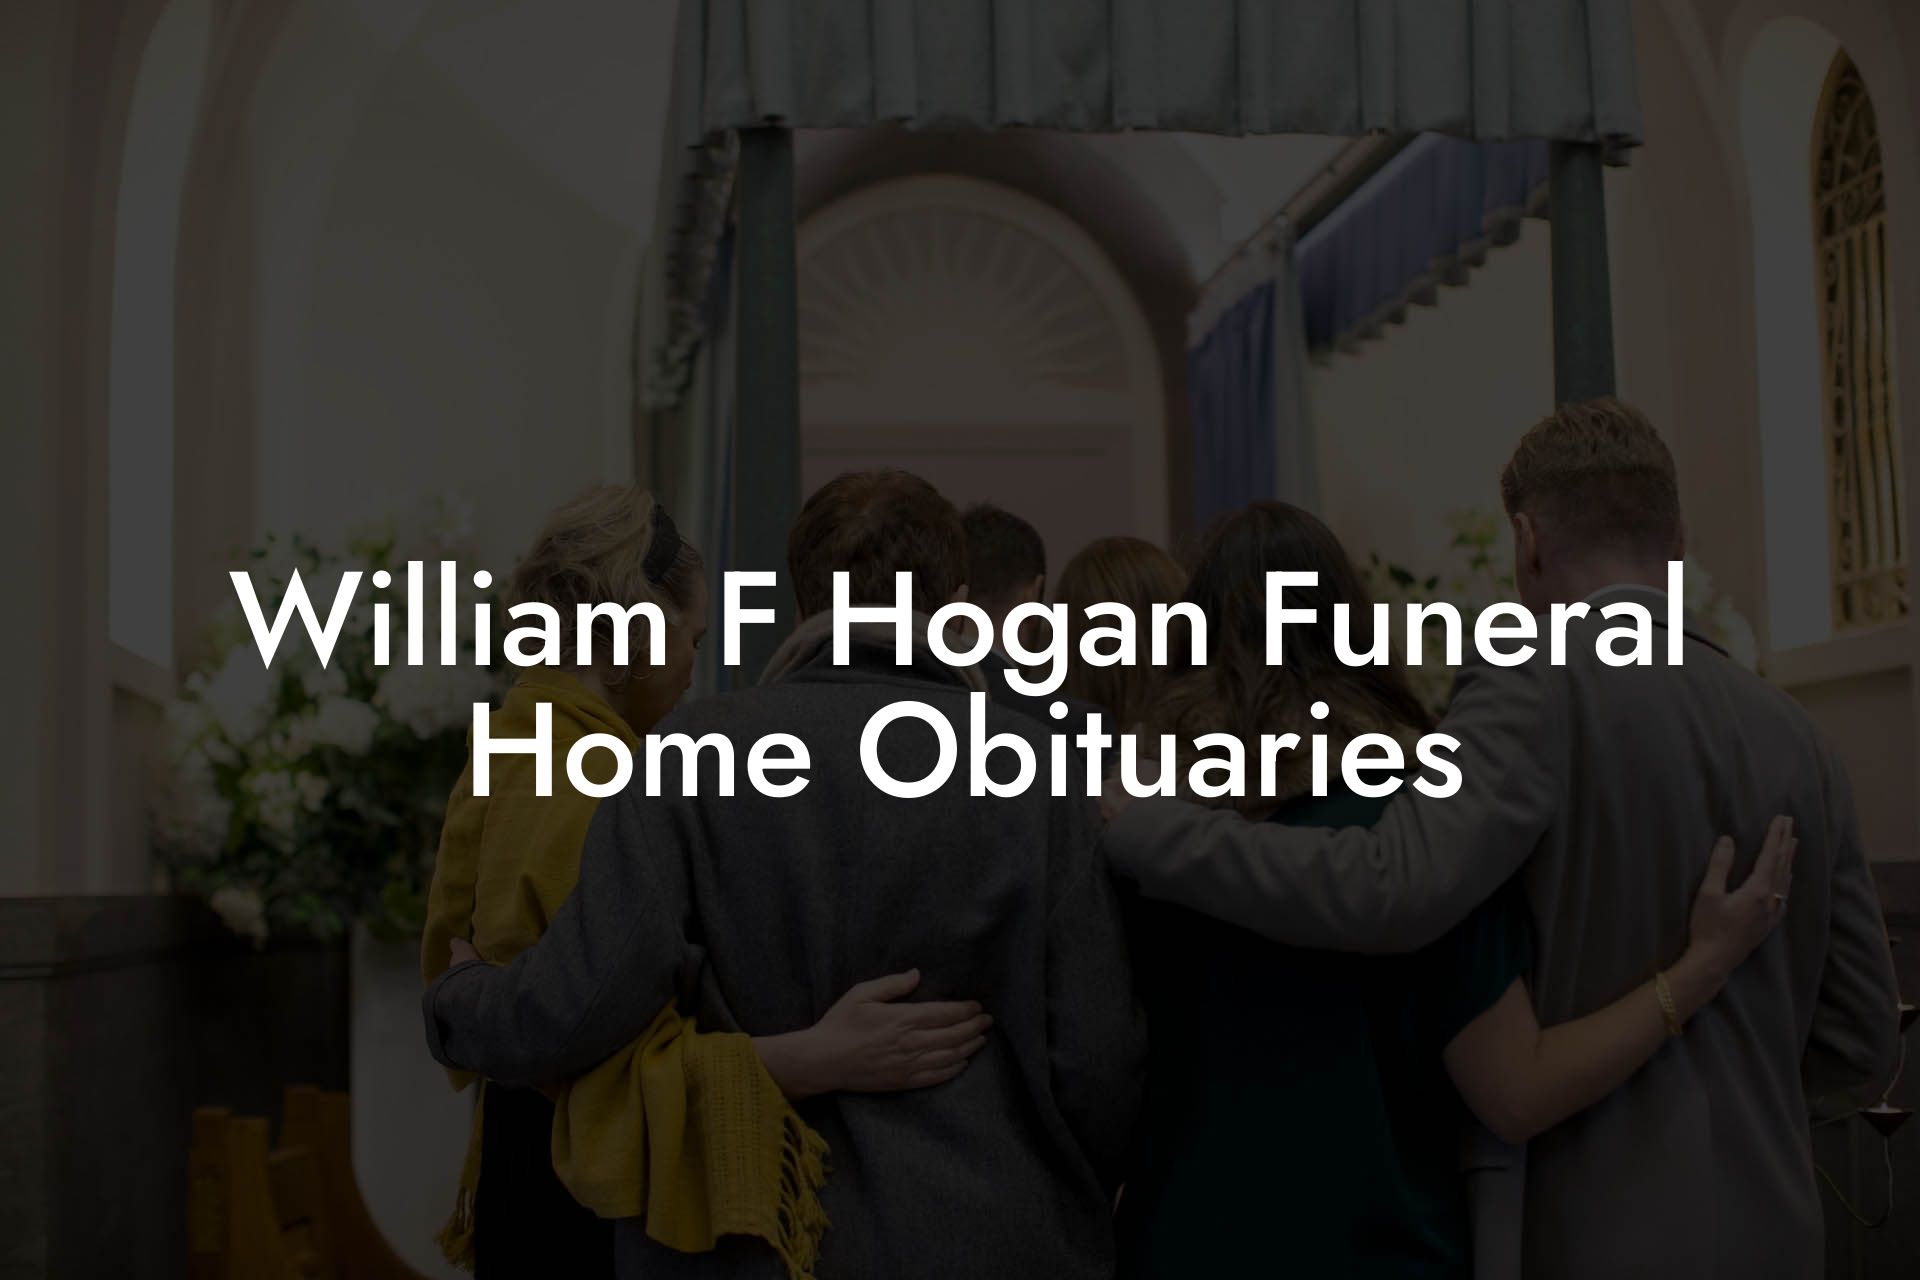 William F Hogan Funeral Home Obituaries